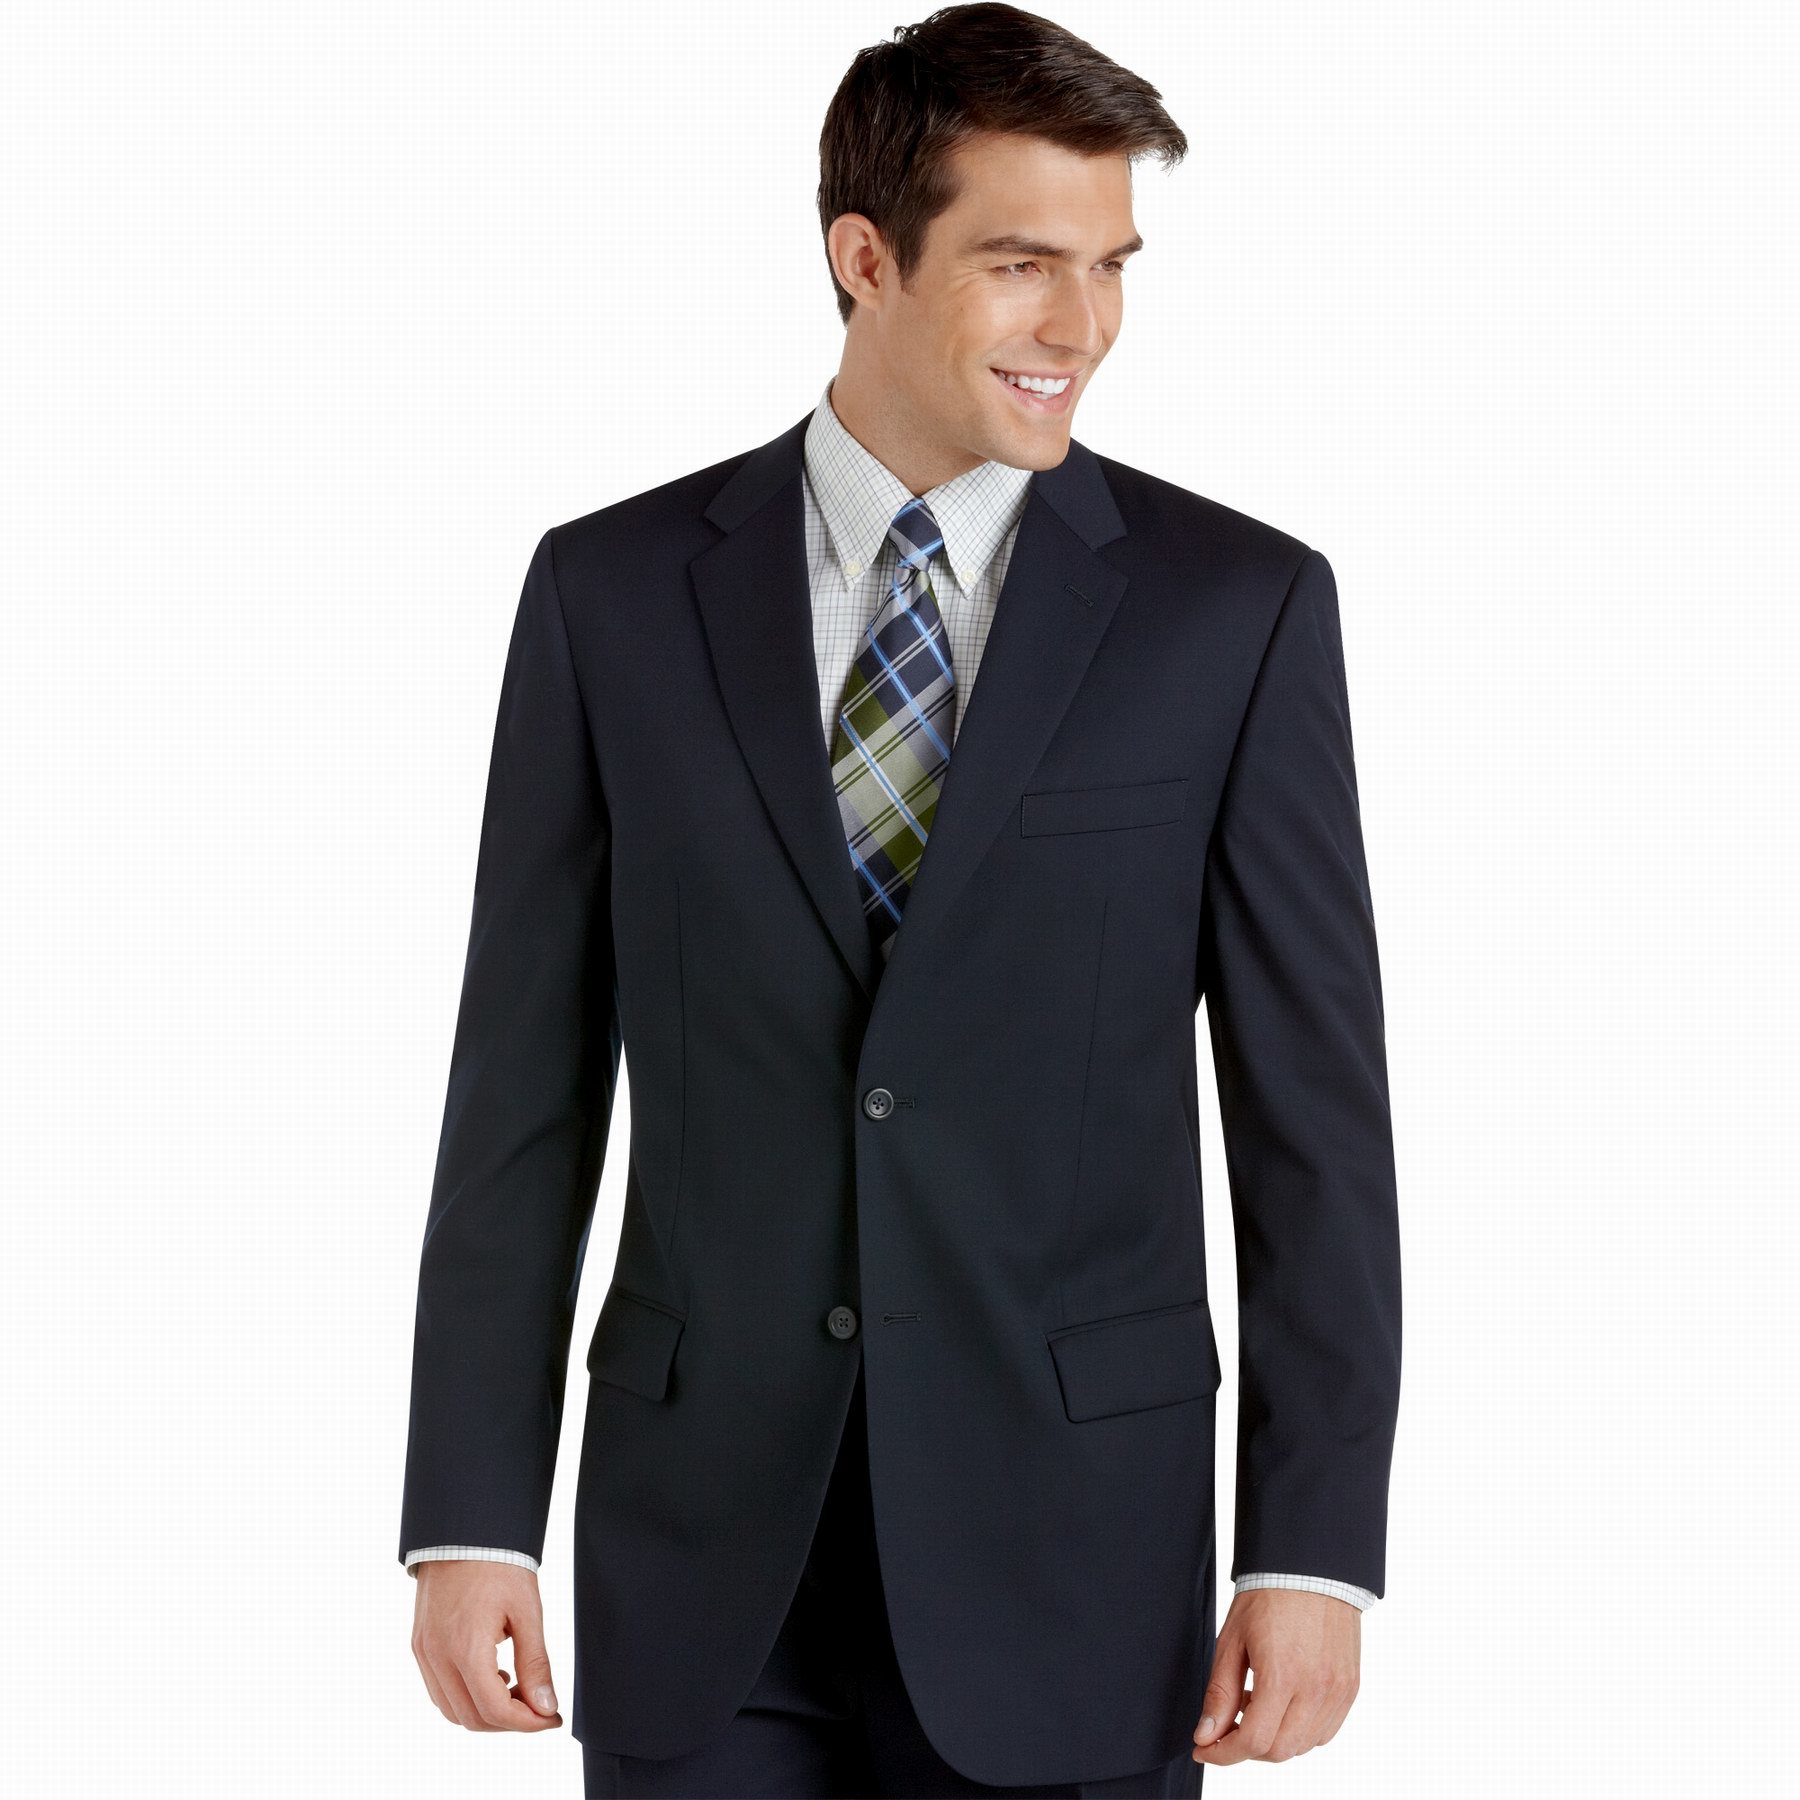 Latest Autumn/Winter 2-Button Notch Lapel Men's Business/Wedding Event Suits